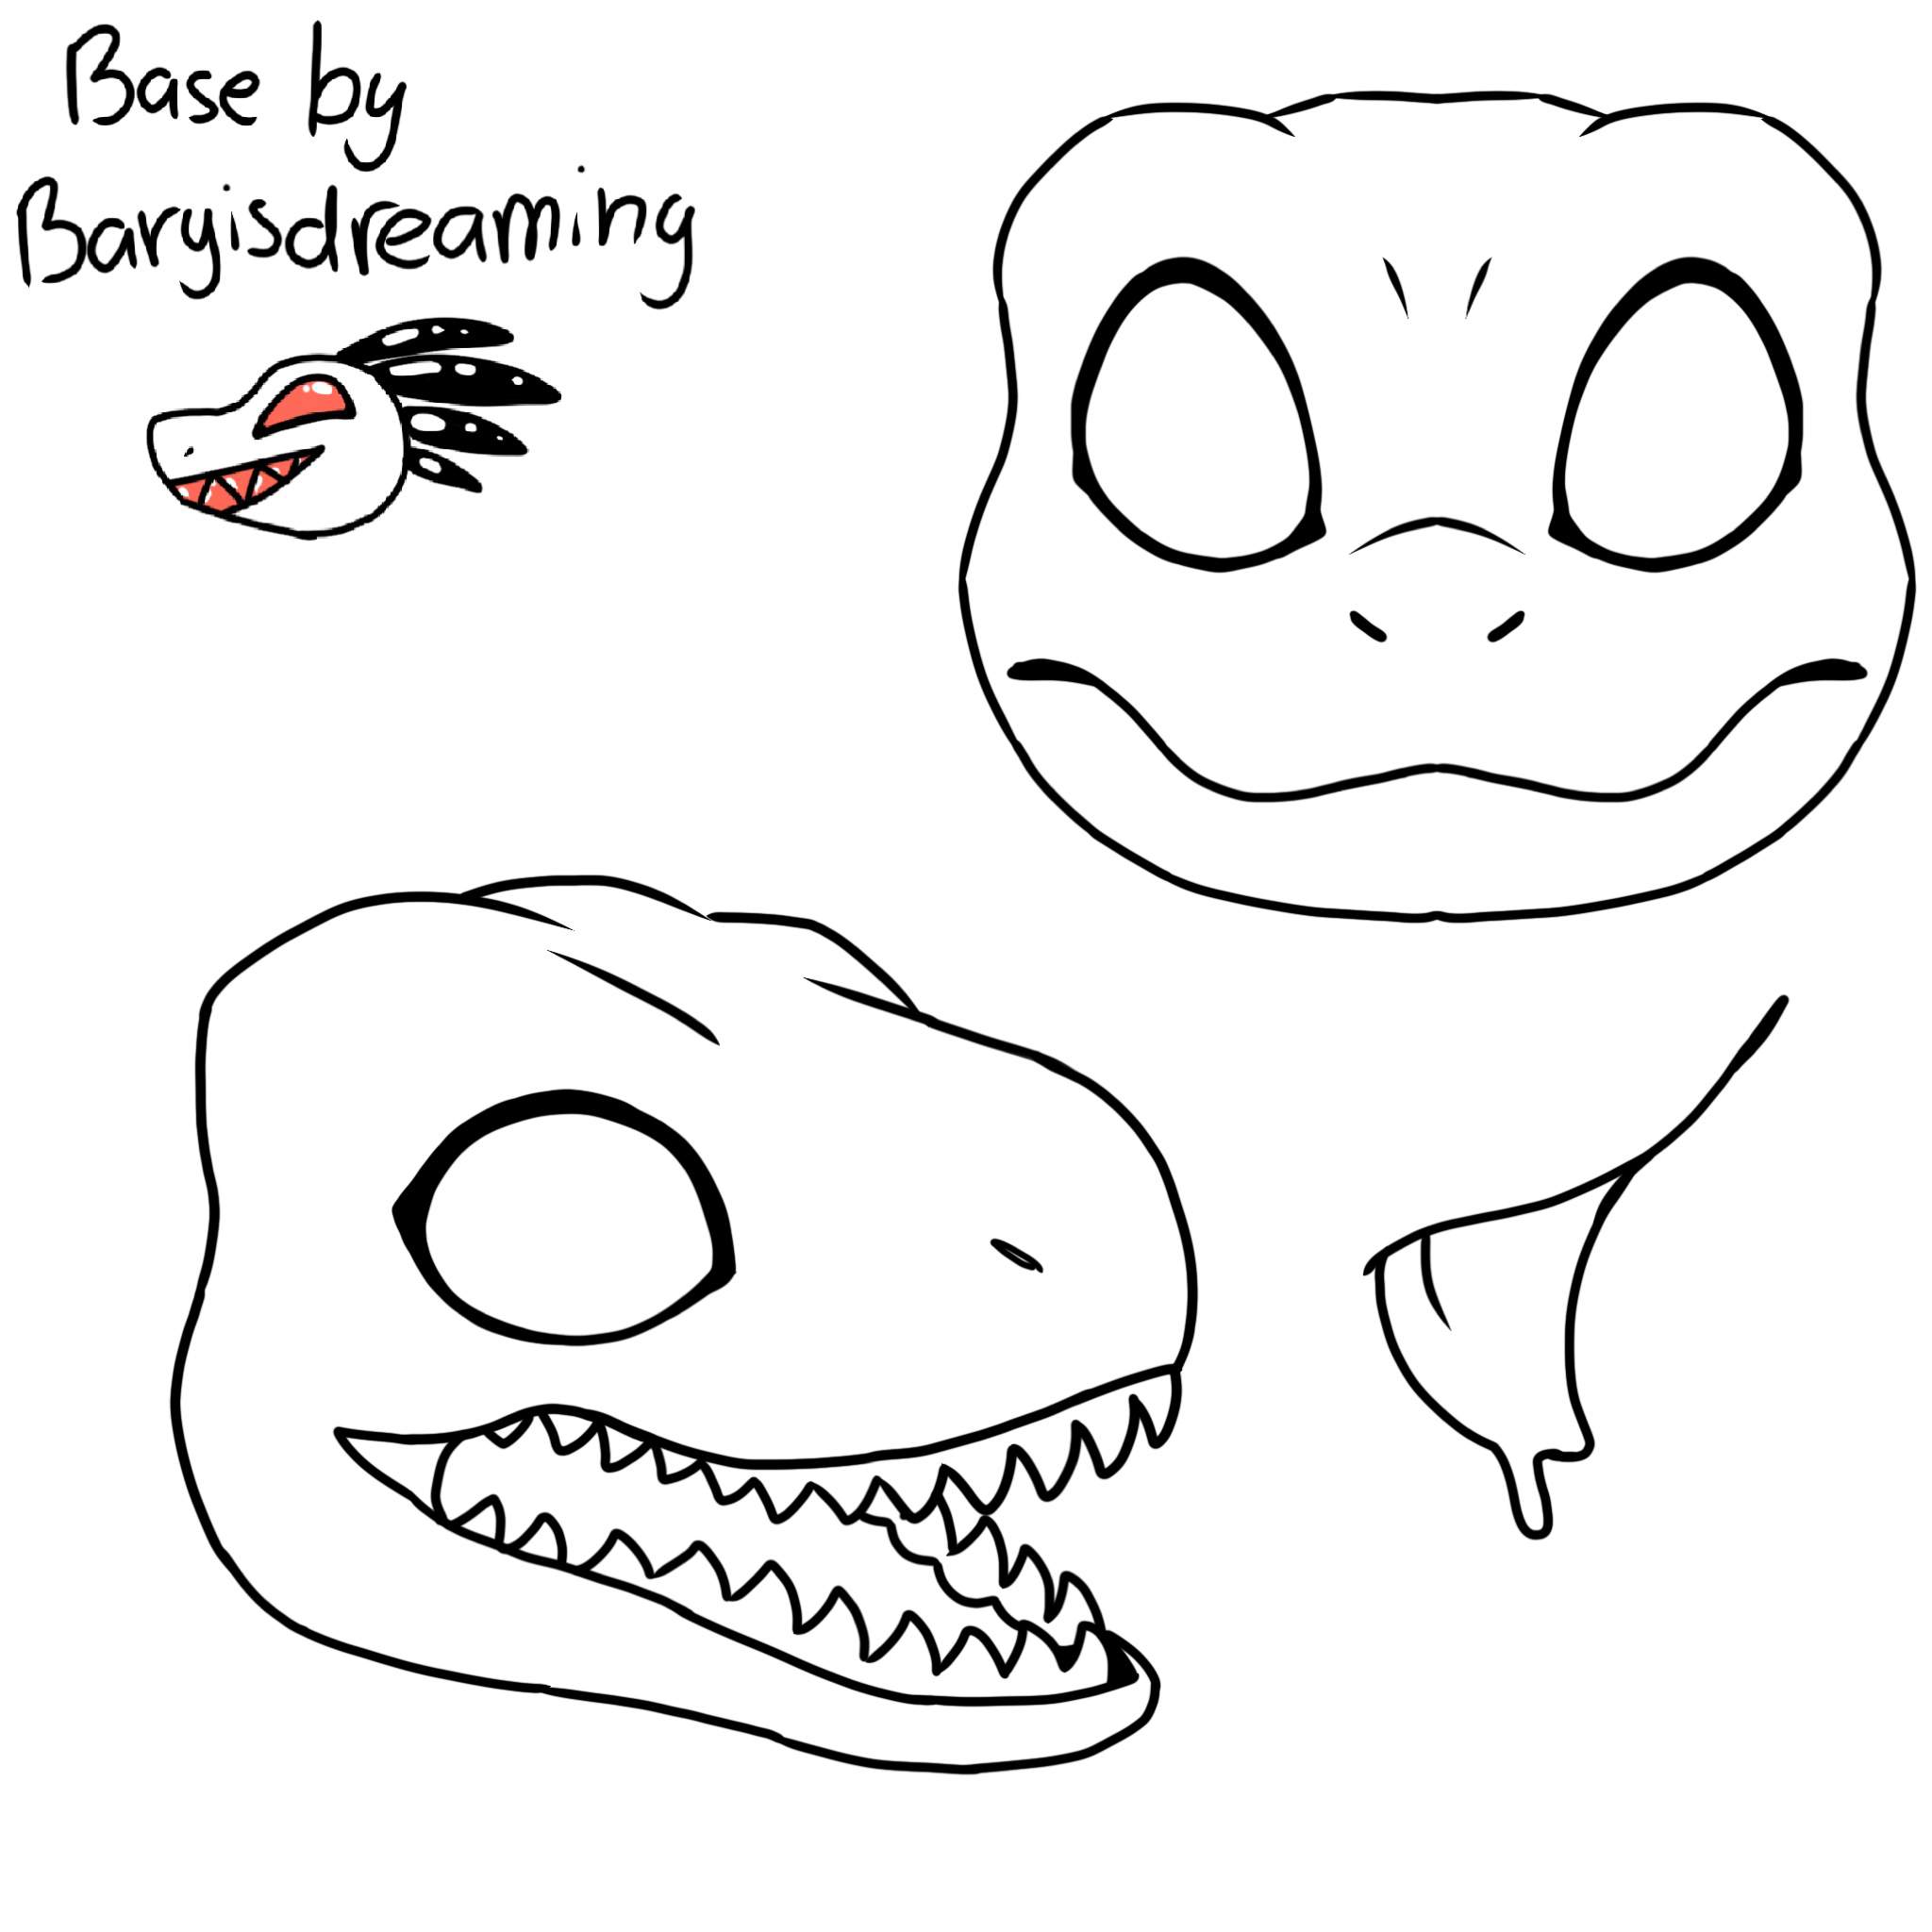 Dinomask drawing